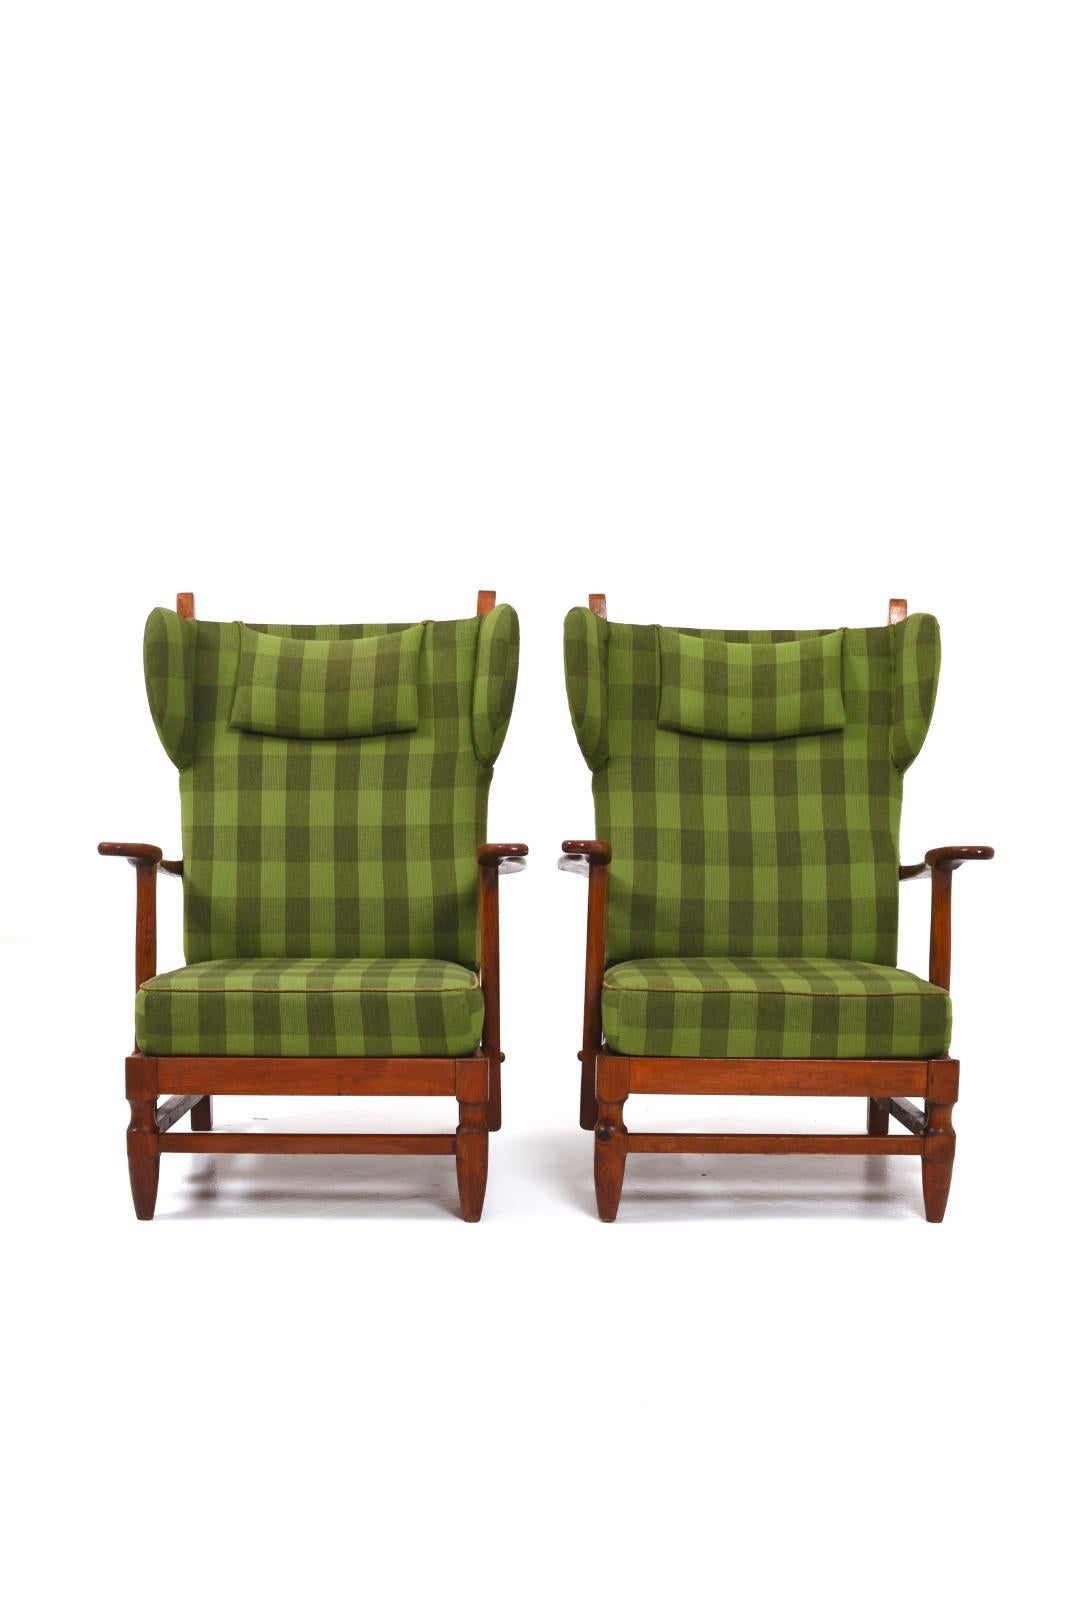 Deux élégants fauteuils de Gunnar Göperts qu'il a conçus dans les années 40 pour sa propre entreprise de meubles Göperts Möbler.

Le fauteuil a une conception ergonomique qui offre un soutien adéquat au dos et à la nuque, ce qui le rend idéal pour